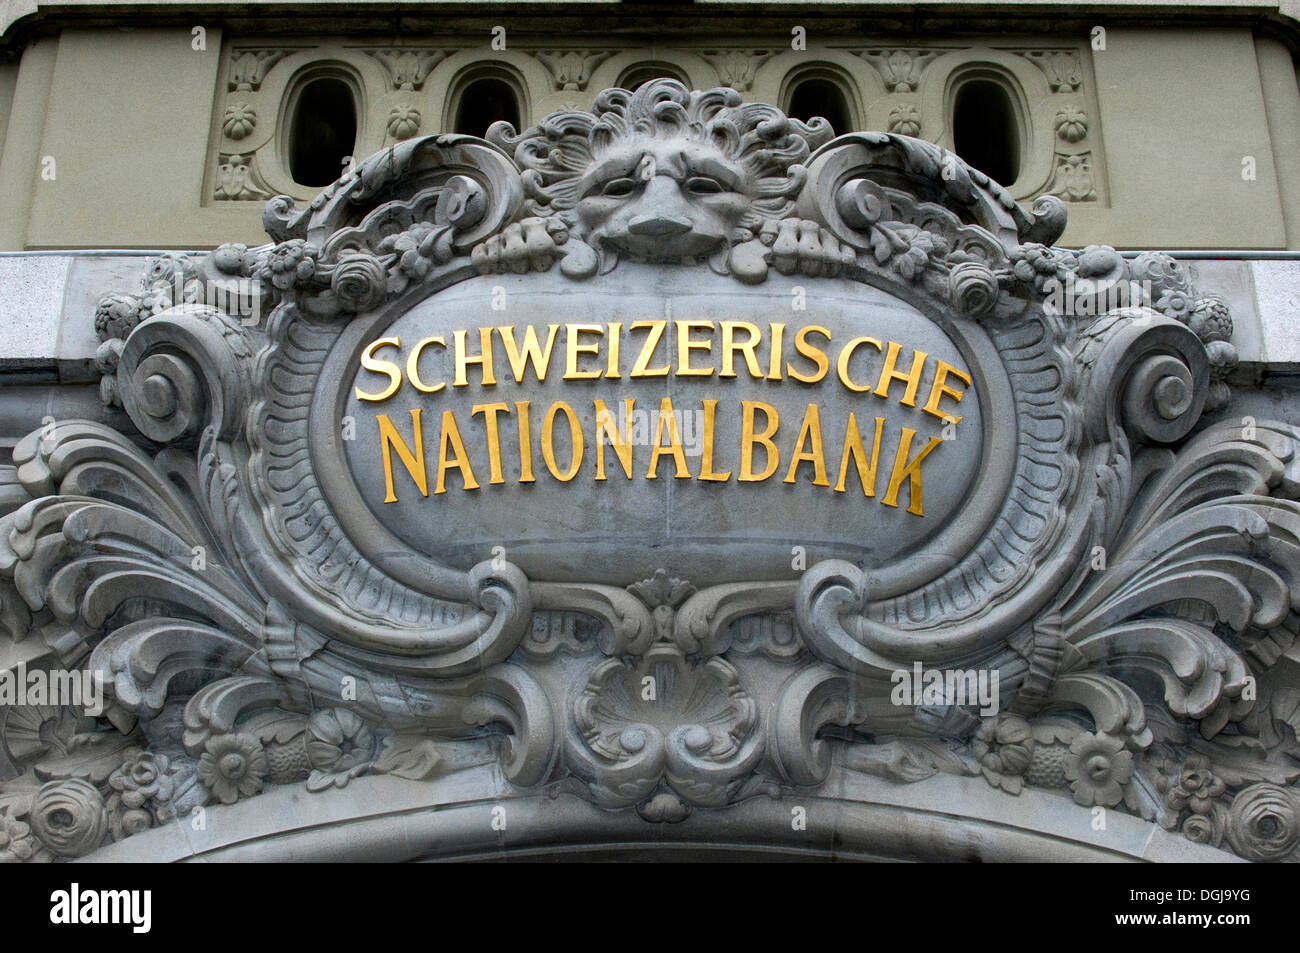 Löwe-Medaillon der Schweizerischen Nationalbank, Schweizer National Bank, über dem Haupteingang, Bern, Schweiz, Europa Stockfoto